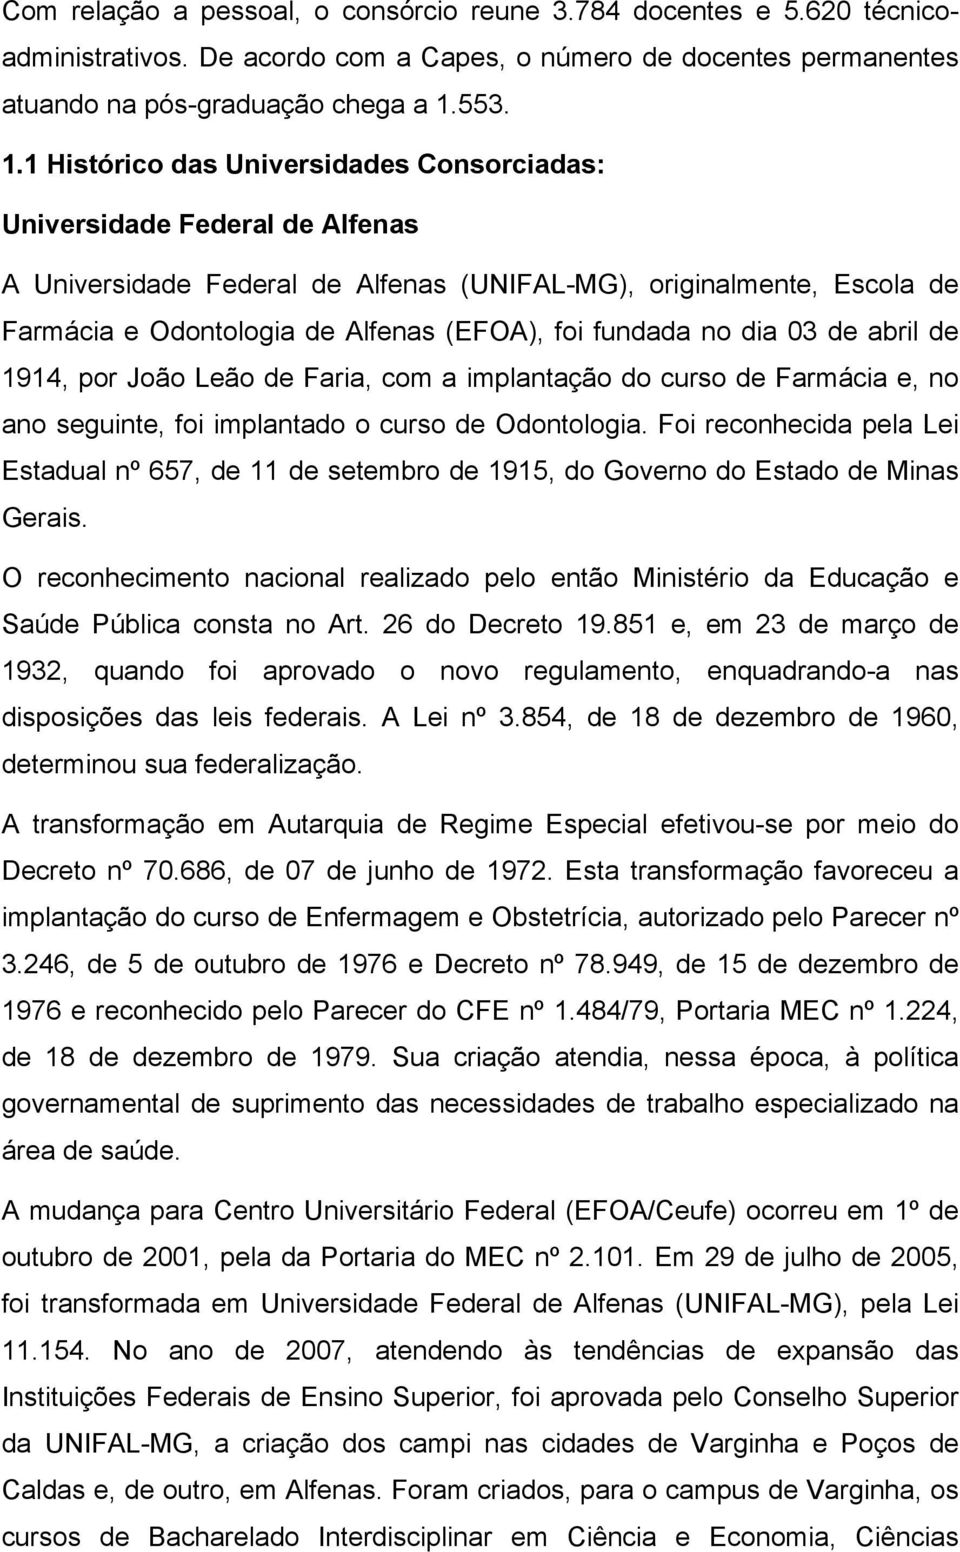 1 Histórico das Universidades Consorciadas: Universidade Federal de Alfenas A Universidade Federal de Alfenas (UNIFAL-MG), originalmente, Escola de Farmácia e Odontologia de Alfenas (EFOA), foi